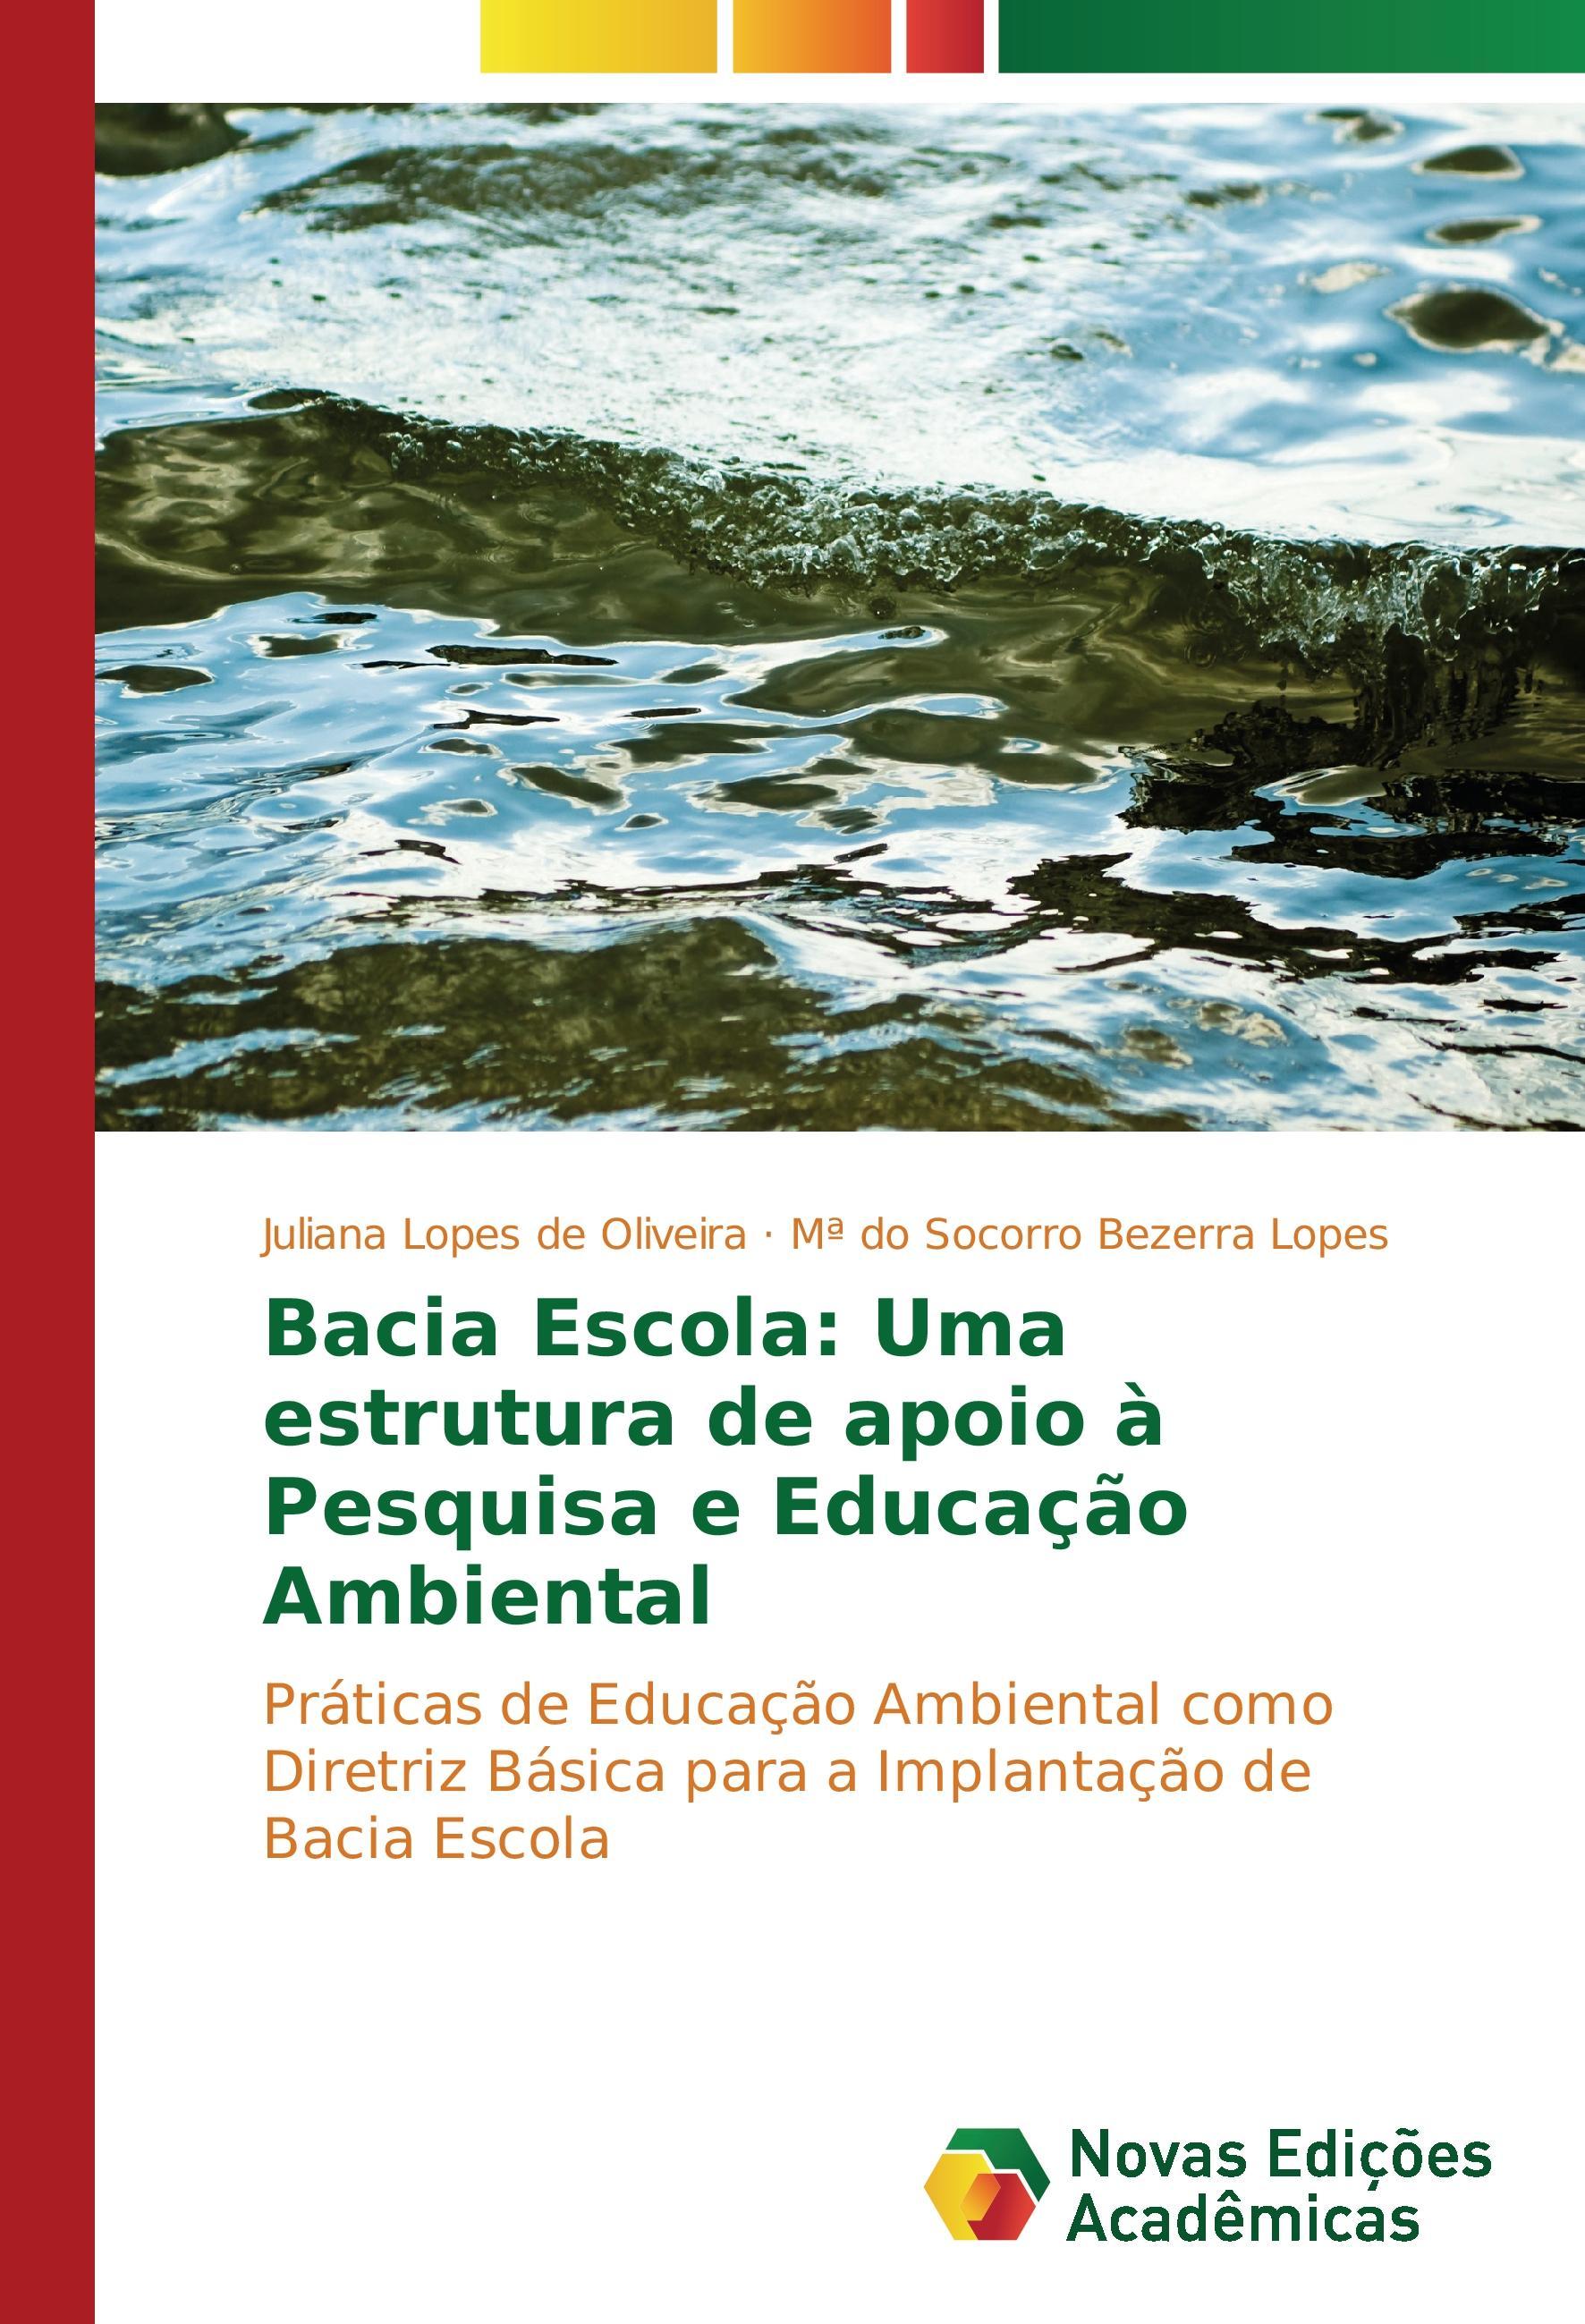 Bacia Escola: Uma estrutura de apoio à Pesquisa e Educação Ambiental - Lopes de Oliveira, Juliana Bezerra Lopes, M do Socorro